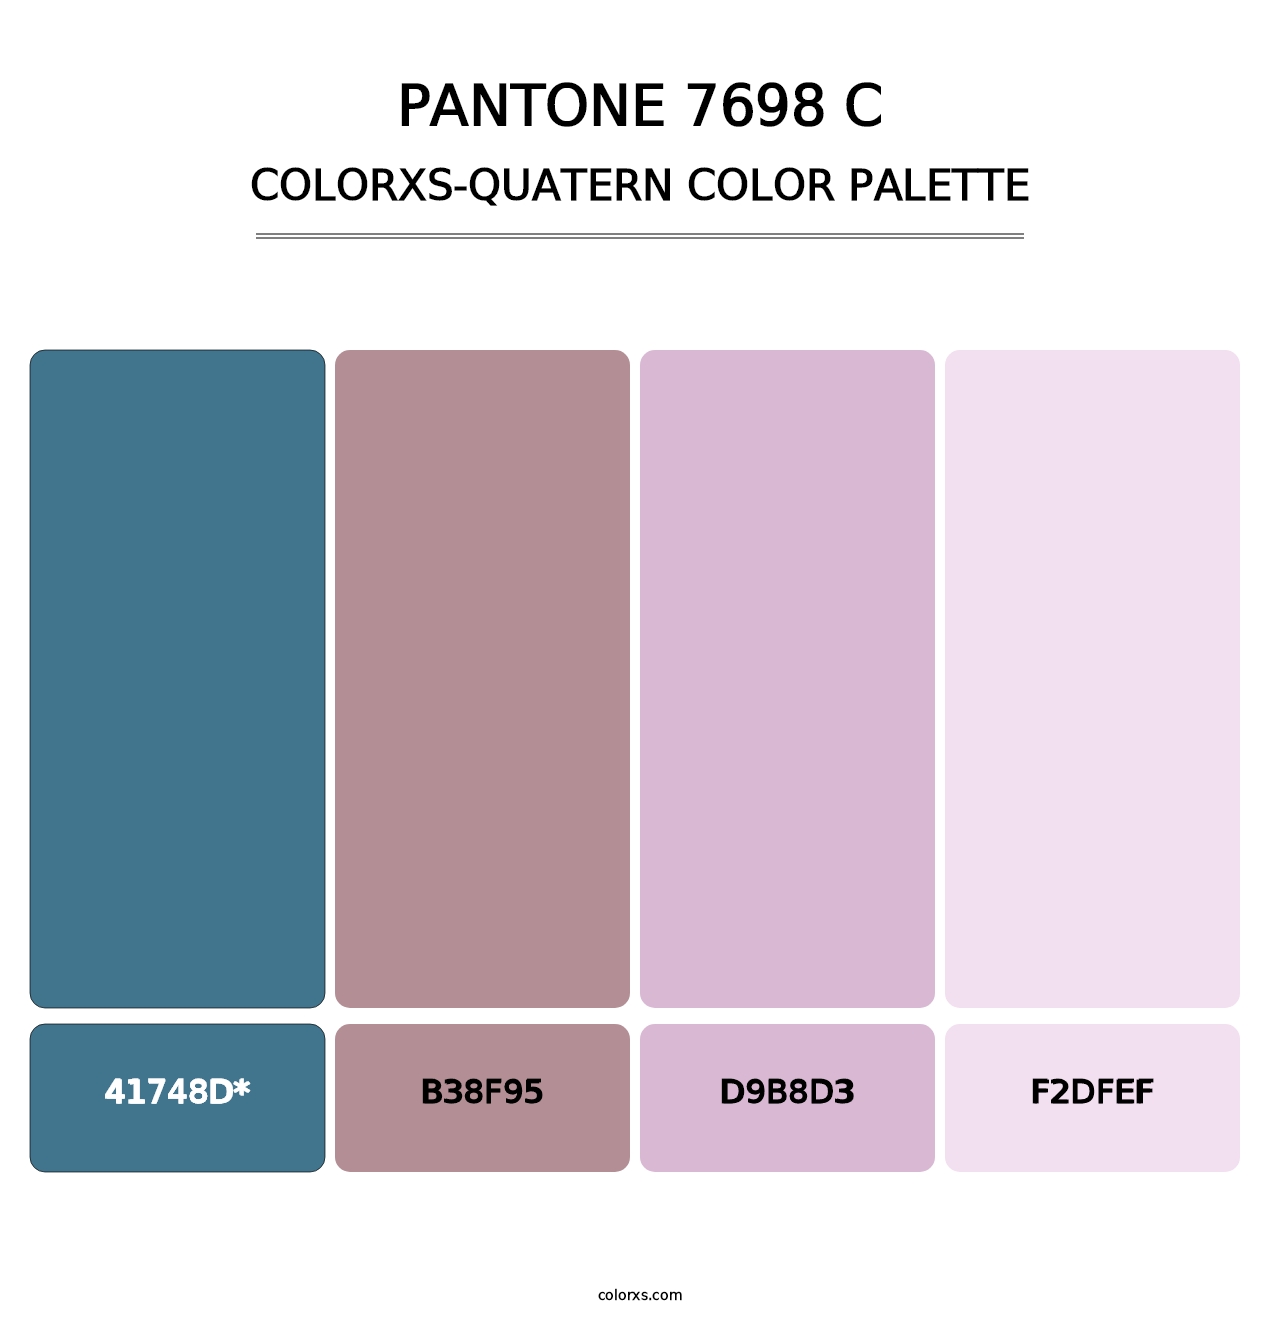 PANTONE 7698 C - Colorxs Quatern Palette